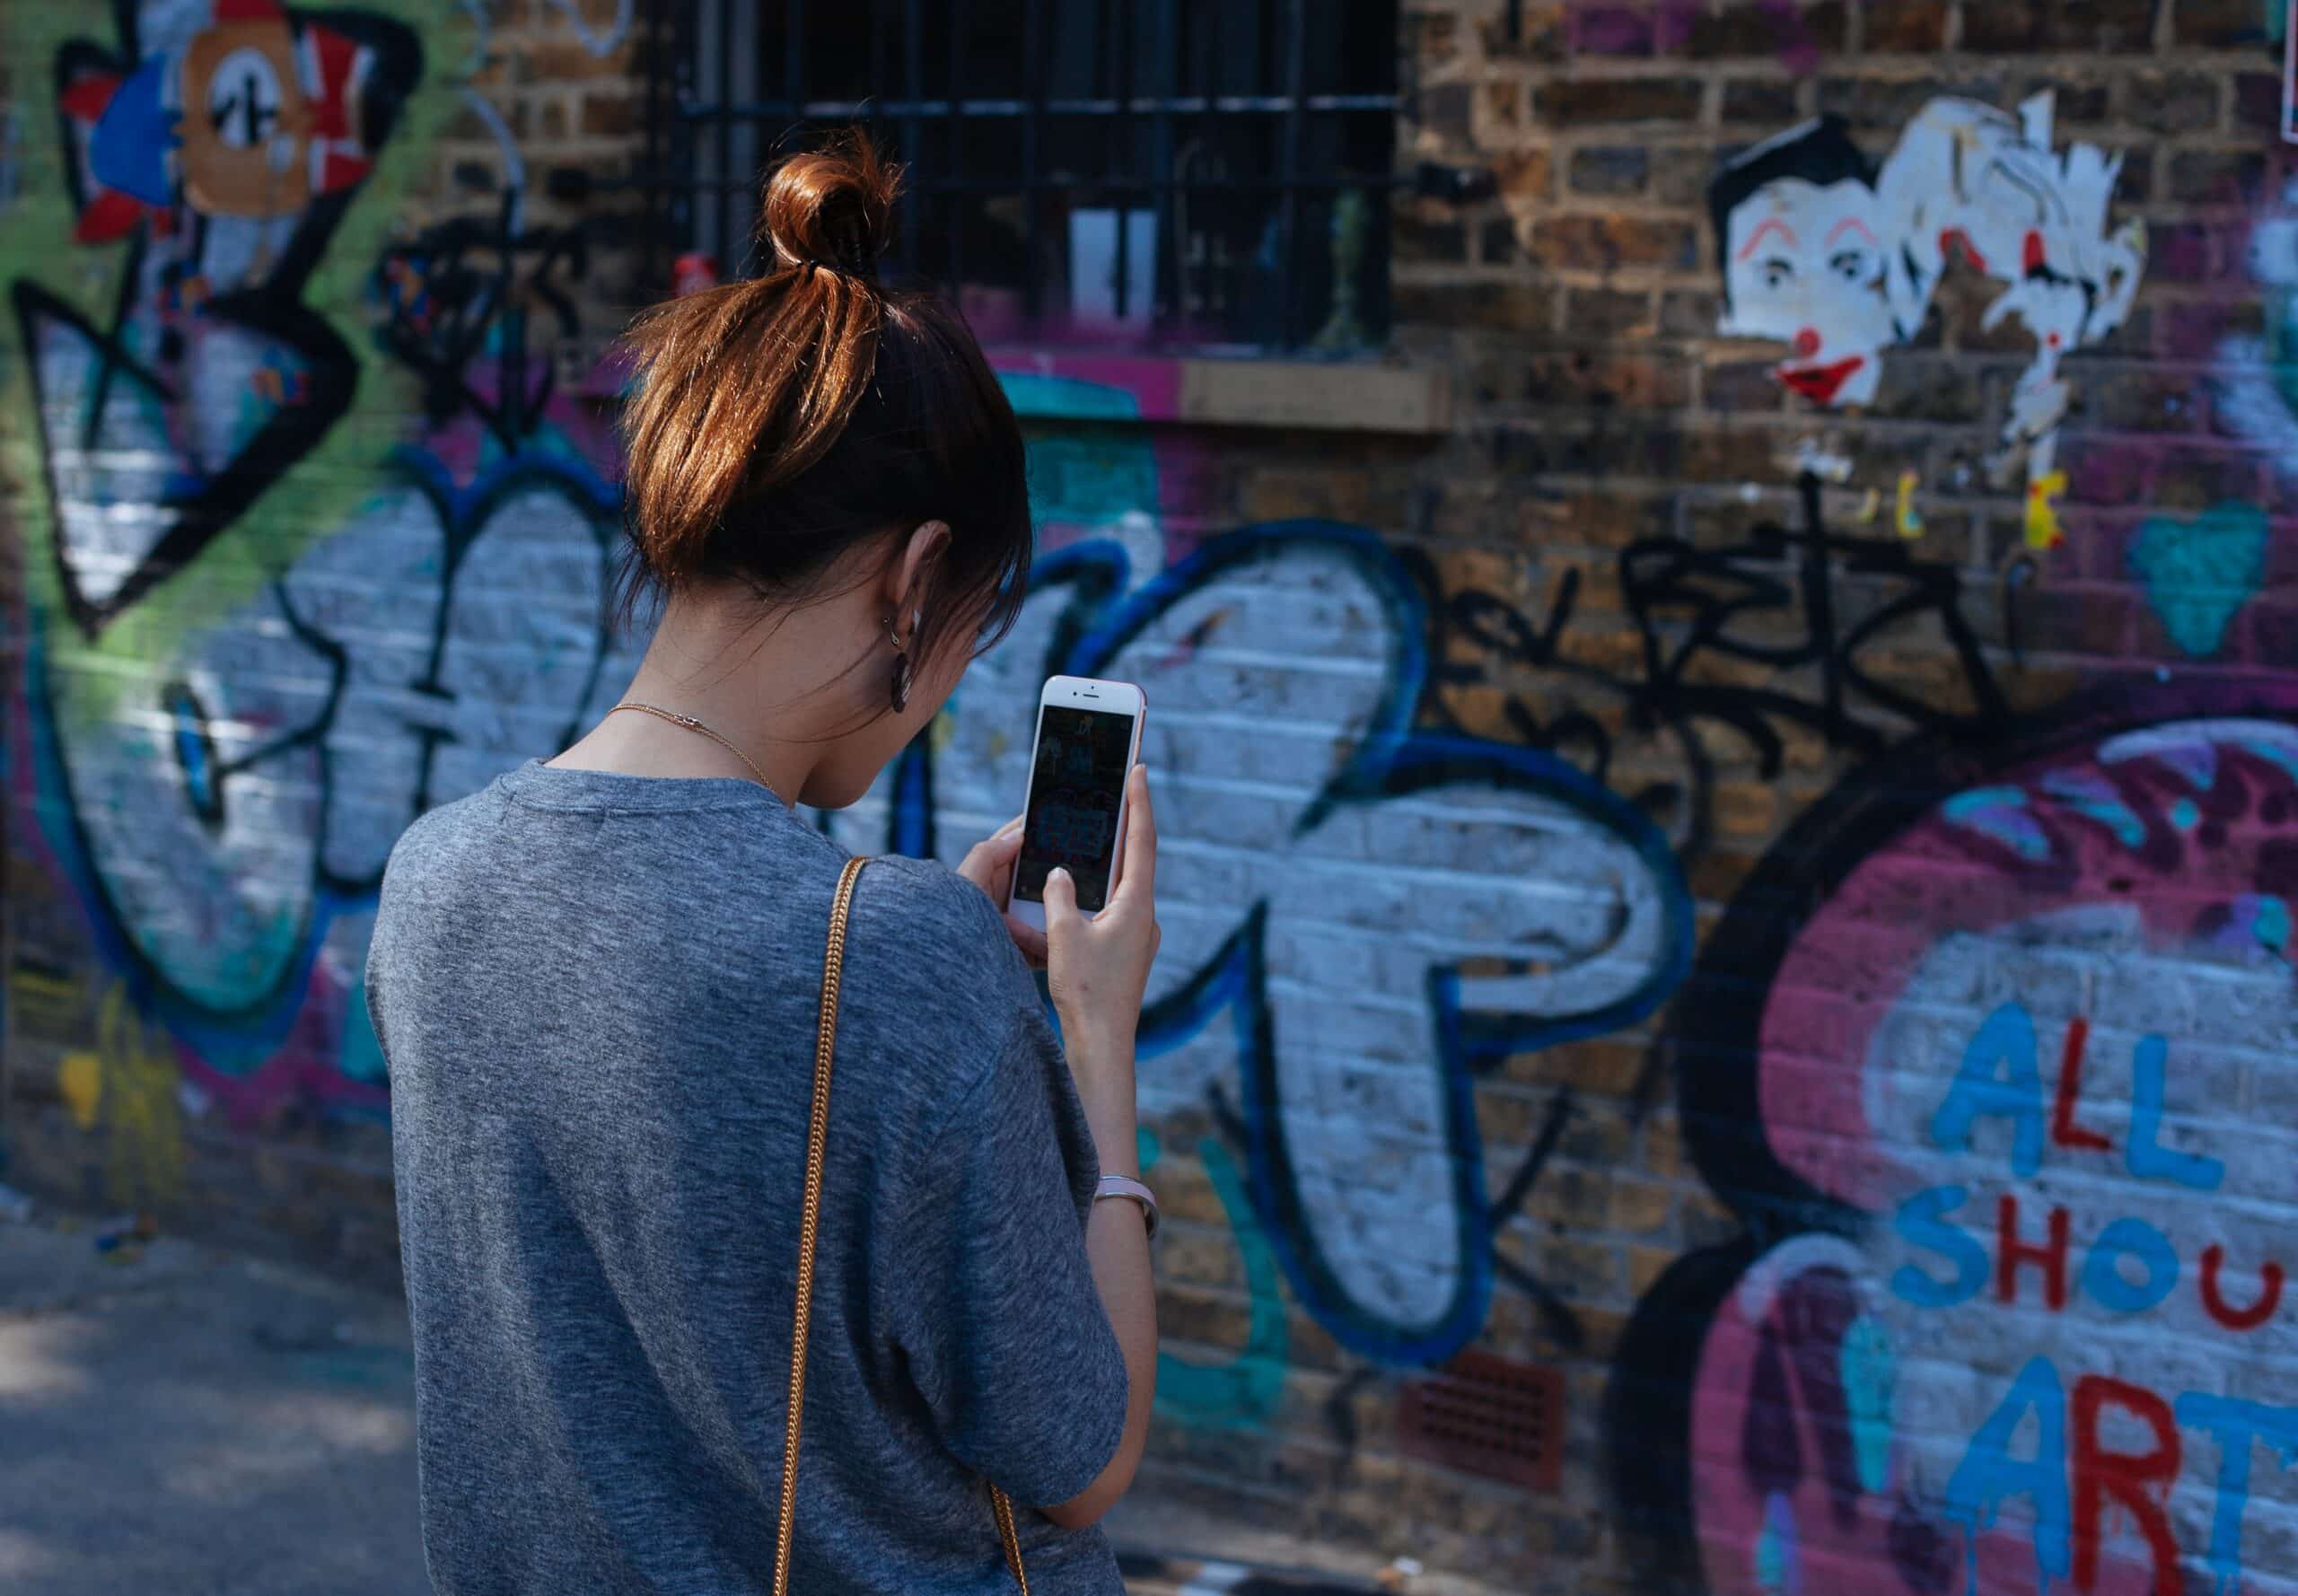 muro pichado de Brick Lane, na Inglaterra, com uma mulher de costas pra câmera, fotografando a parede. Ela é branca, cabelo liso e preso pra cima, usando um camisetão cinza e segurando um celular iphone branco para fotografar a arte. A imagem é usada para ilustrar como funciona o chip virtual para celulares compatíveis com o e-sim